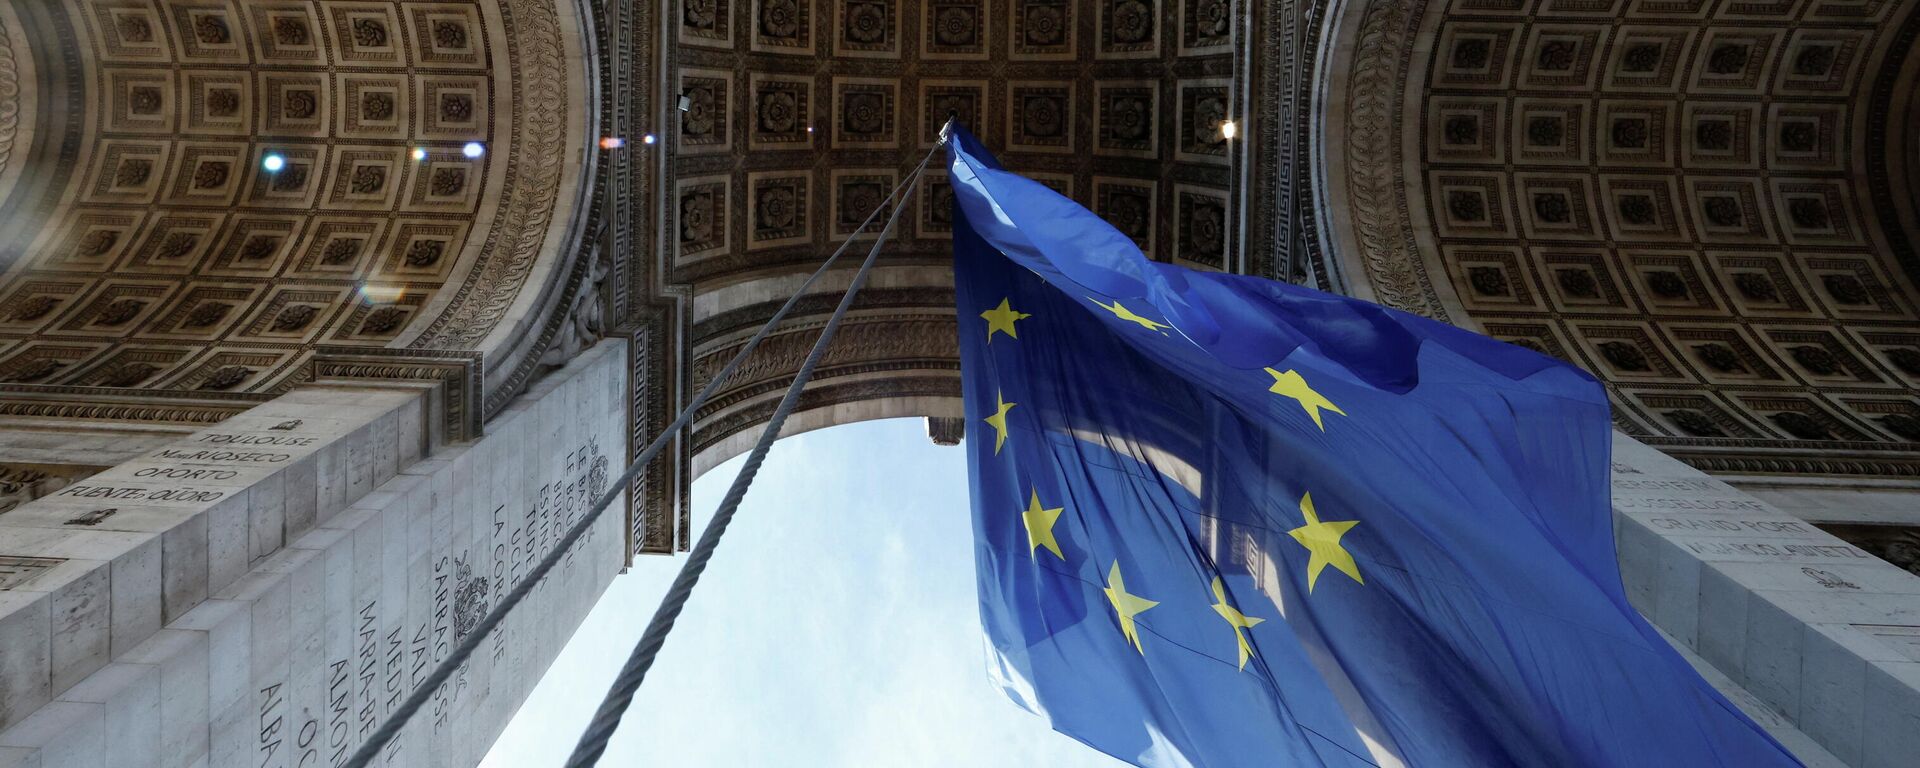 Fransa'nın Avrupa Birliği Dönem Başkanlığını 6 aylığına devralması vesilesiyle Paris'teki Zafer Takı'na 31 Aralık 2021 günü asılan AB bayrağı, sağ ve aşırı sağ kanattan gelen tepkilerin ardından 2 Ocak 2022 günü kaldırıldı.  - Sputnik Türkiye, 1920, 03.01.2022